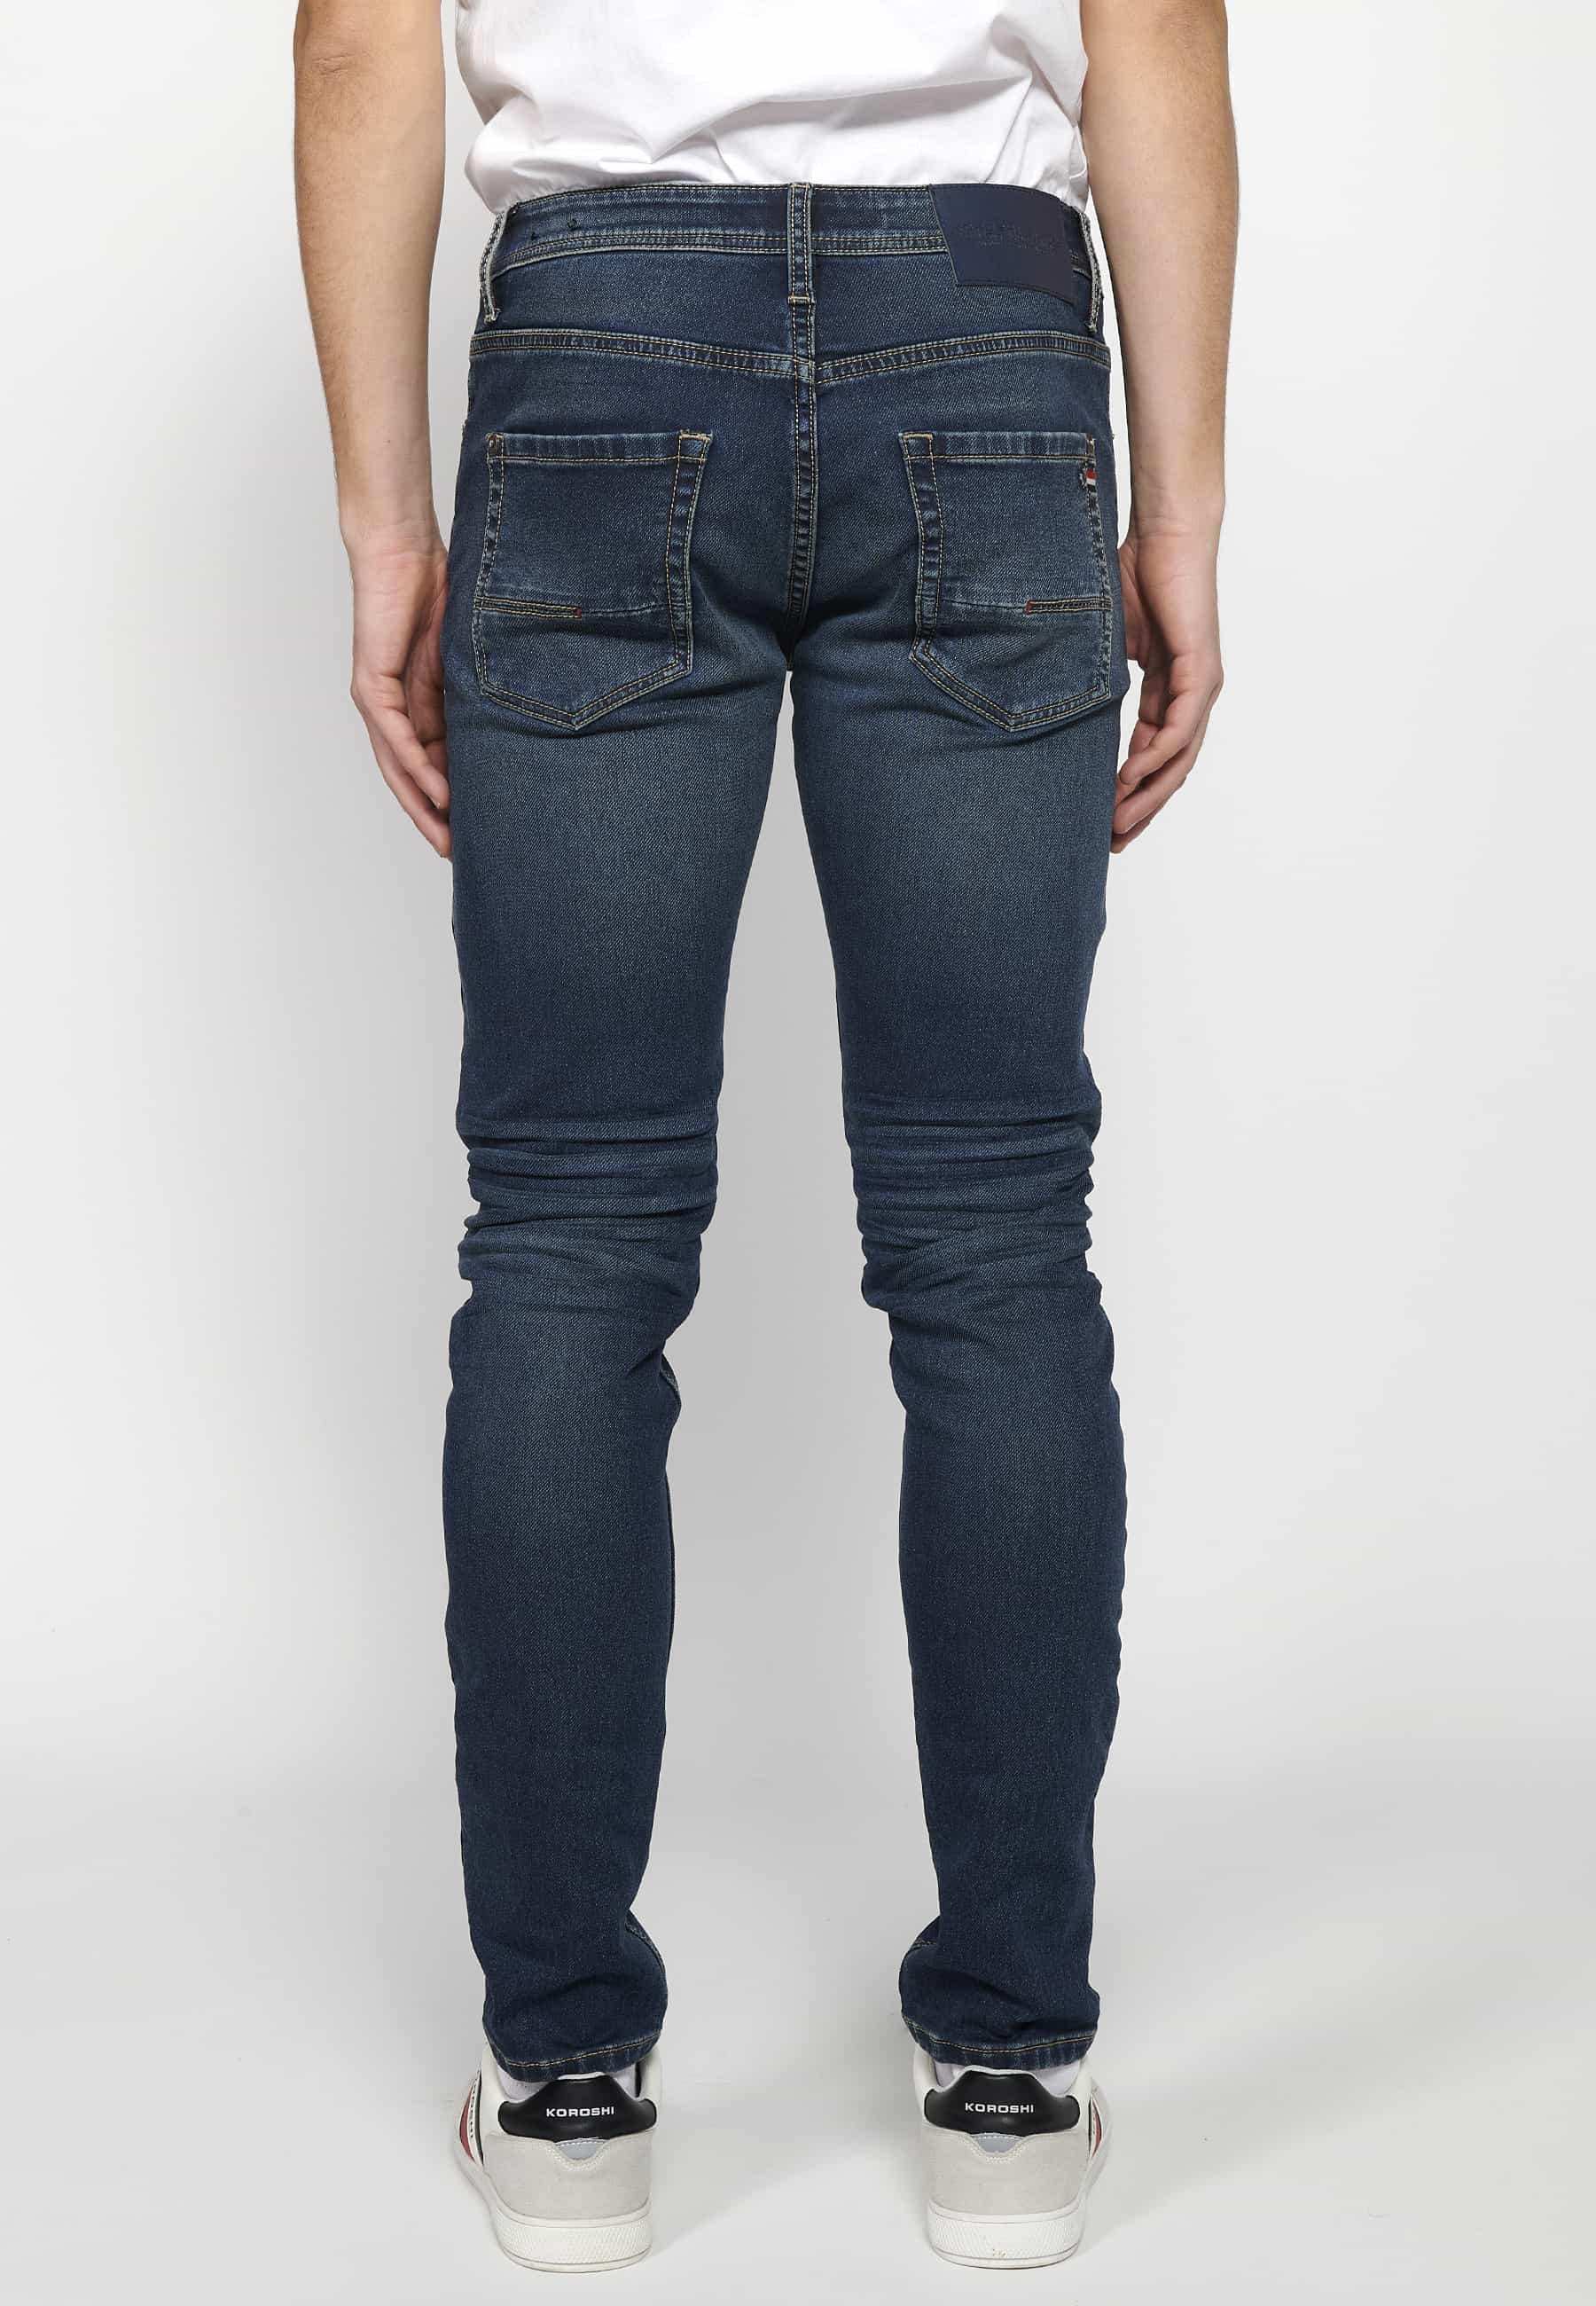 Lange Slim-Fit-Jeans mit Reißverschluss und Knopfverschluss vorne und fünf Taschen, eine blaue Tasche für Herren 2